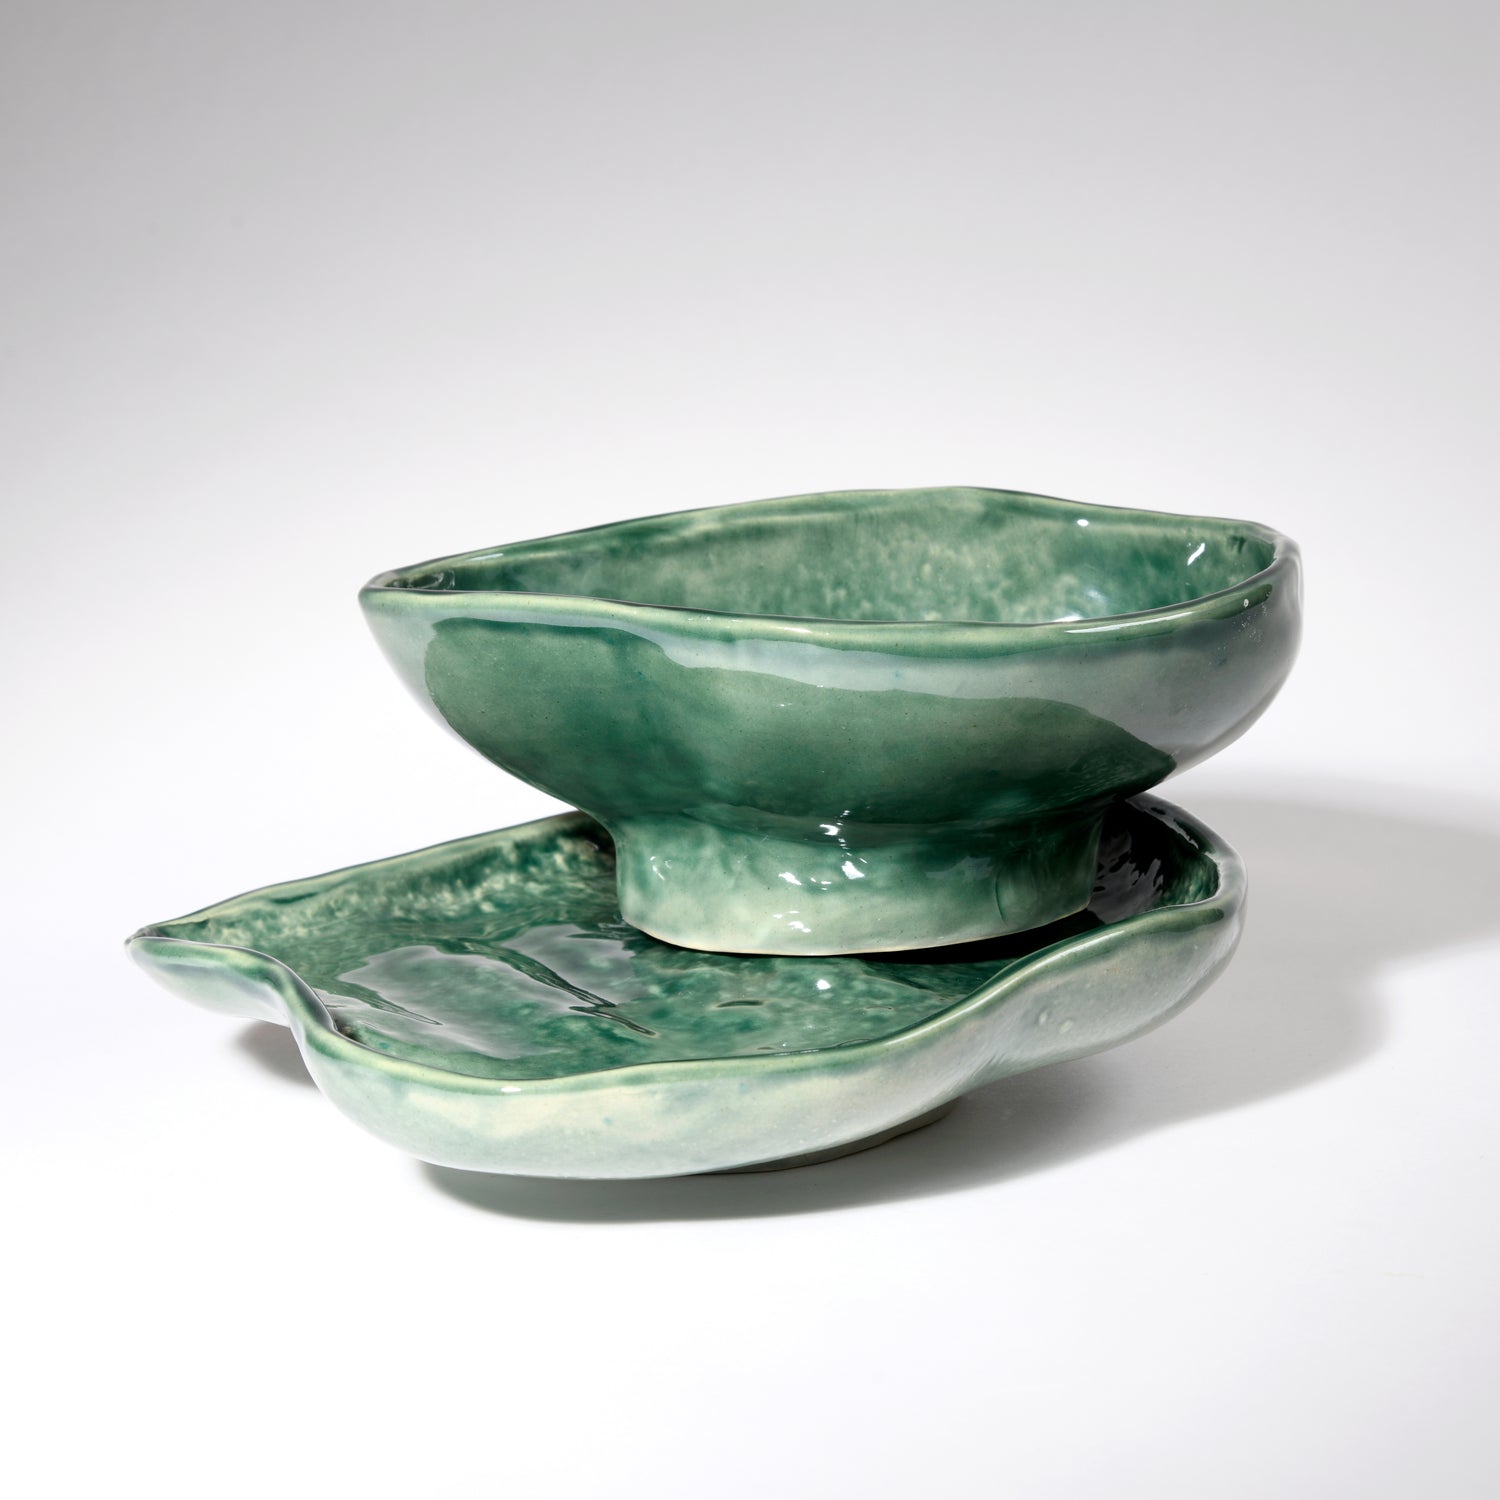 A tactile handmade ceramic bowl